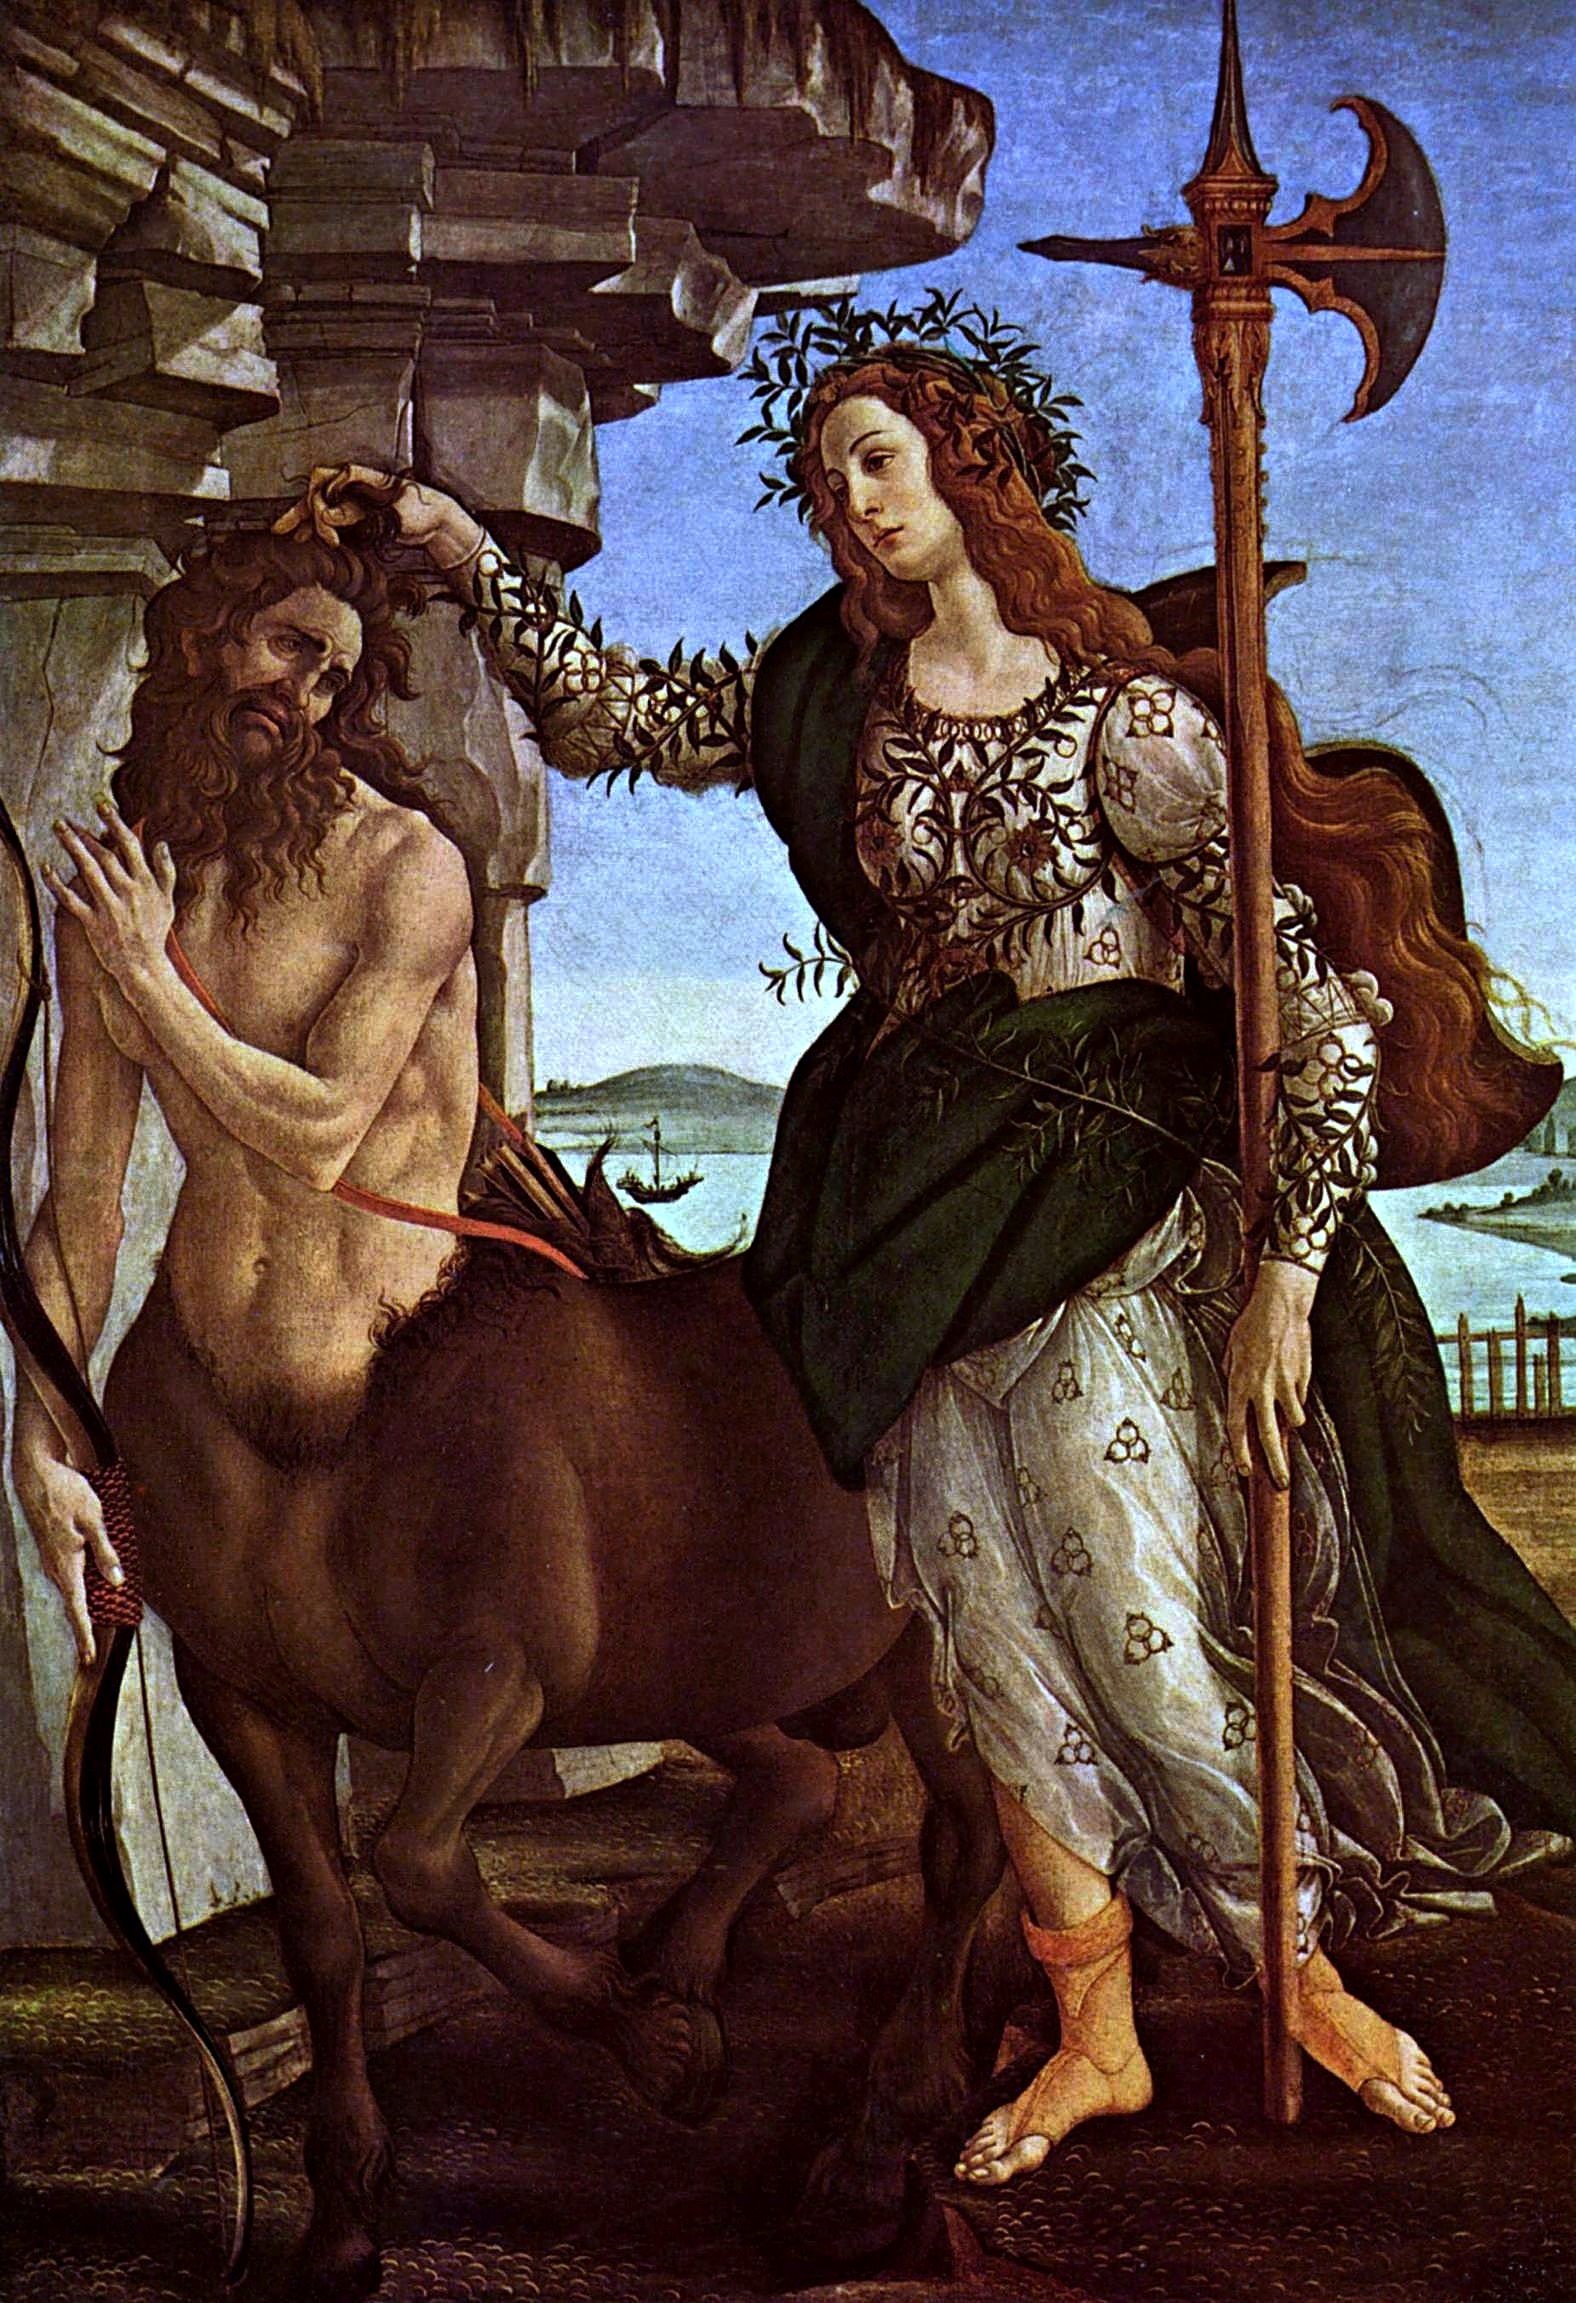 Athene und der Kentaur by Sandro Botticelli - 1482 - 207 x 148 cm Galleria degli Uffizi (Die Uffizien)